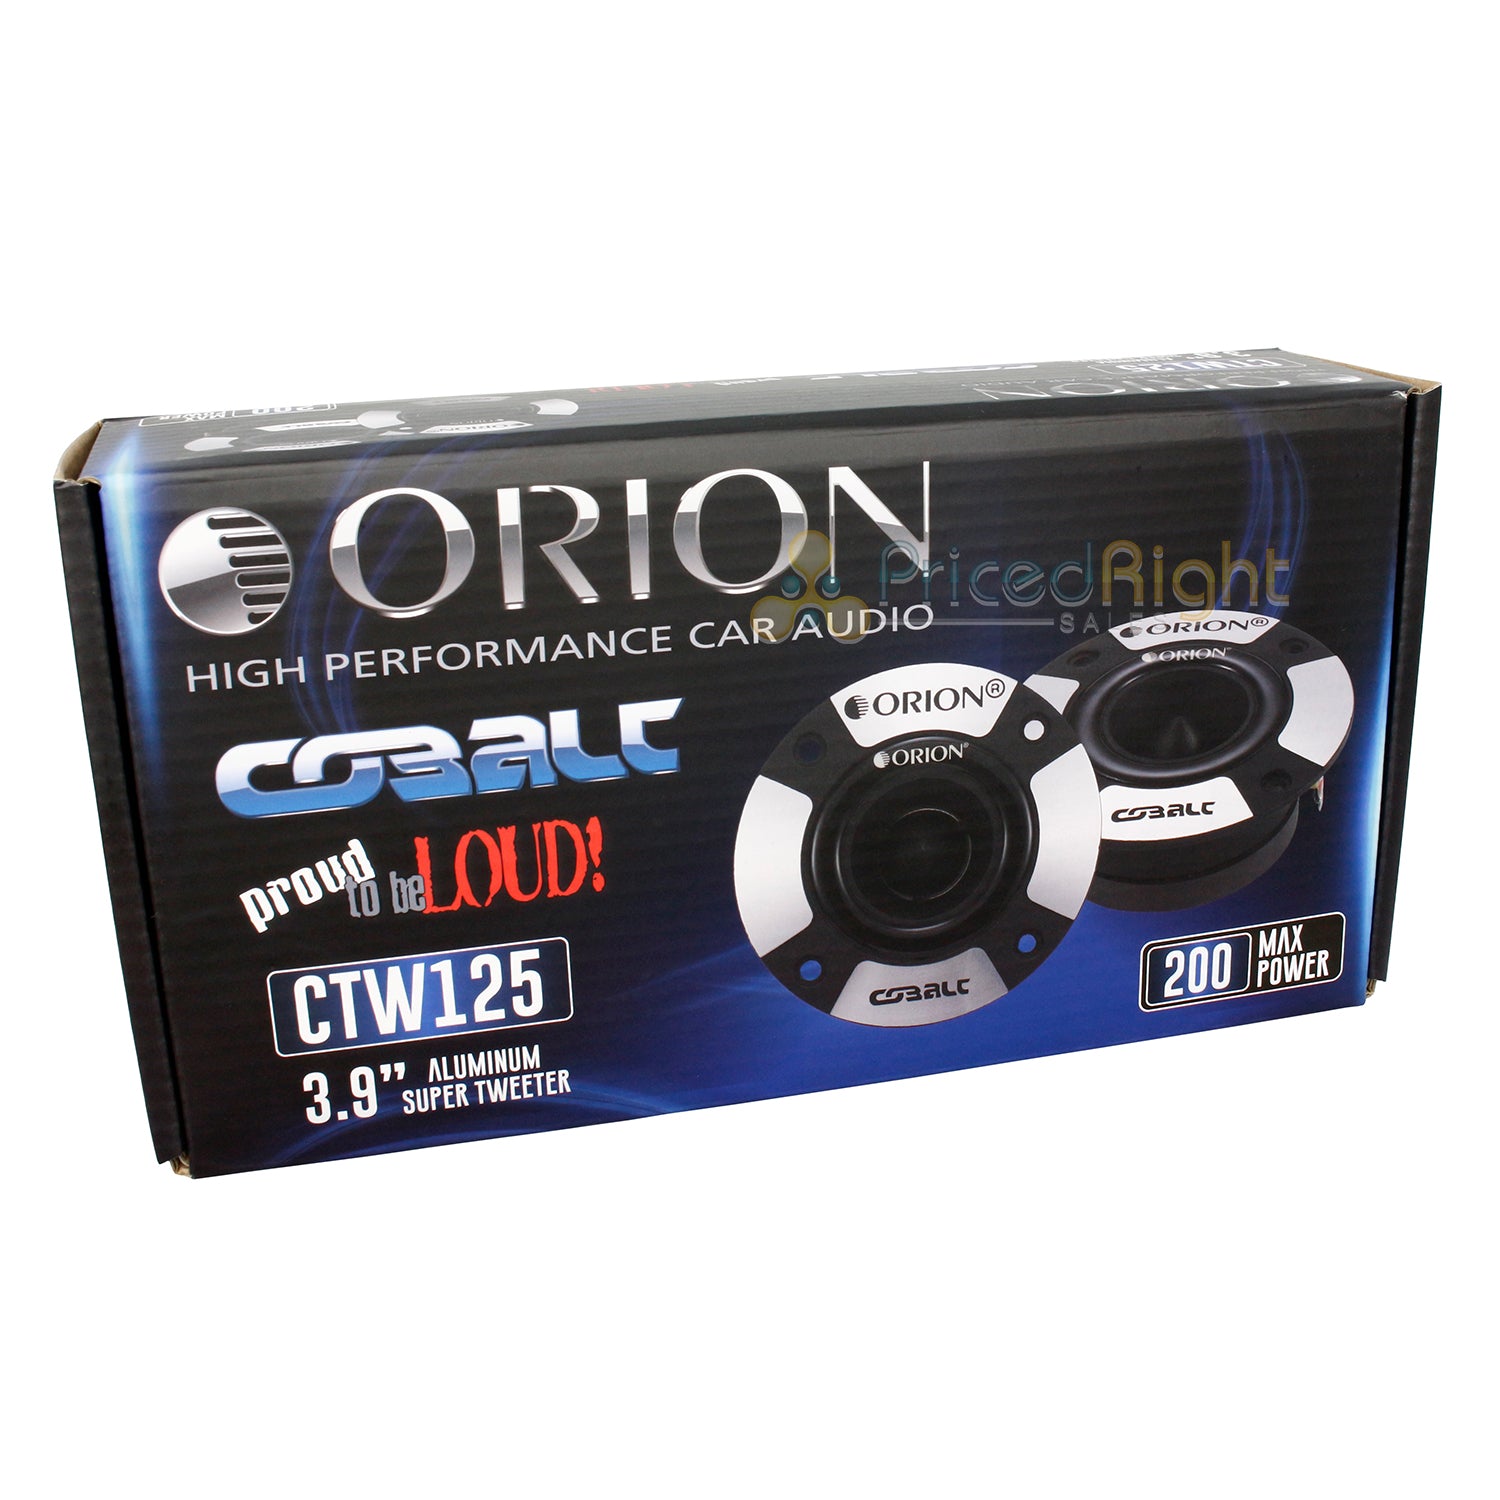 Orion Cobalt Series 3.9" Aluminum Super Tweeter Pair 50W Rms 200W Max CTW125